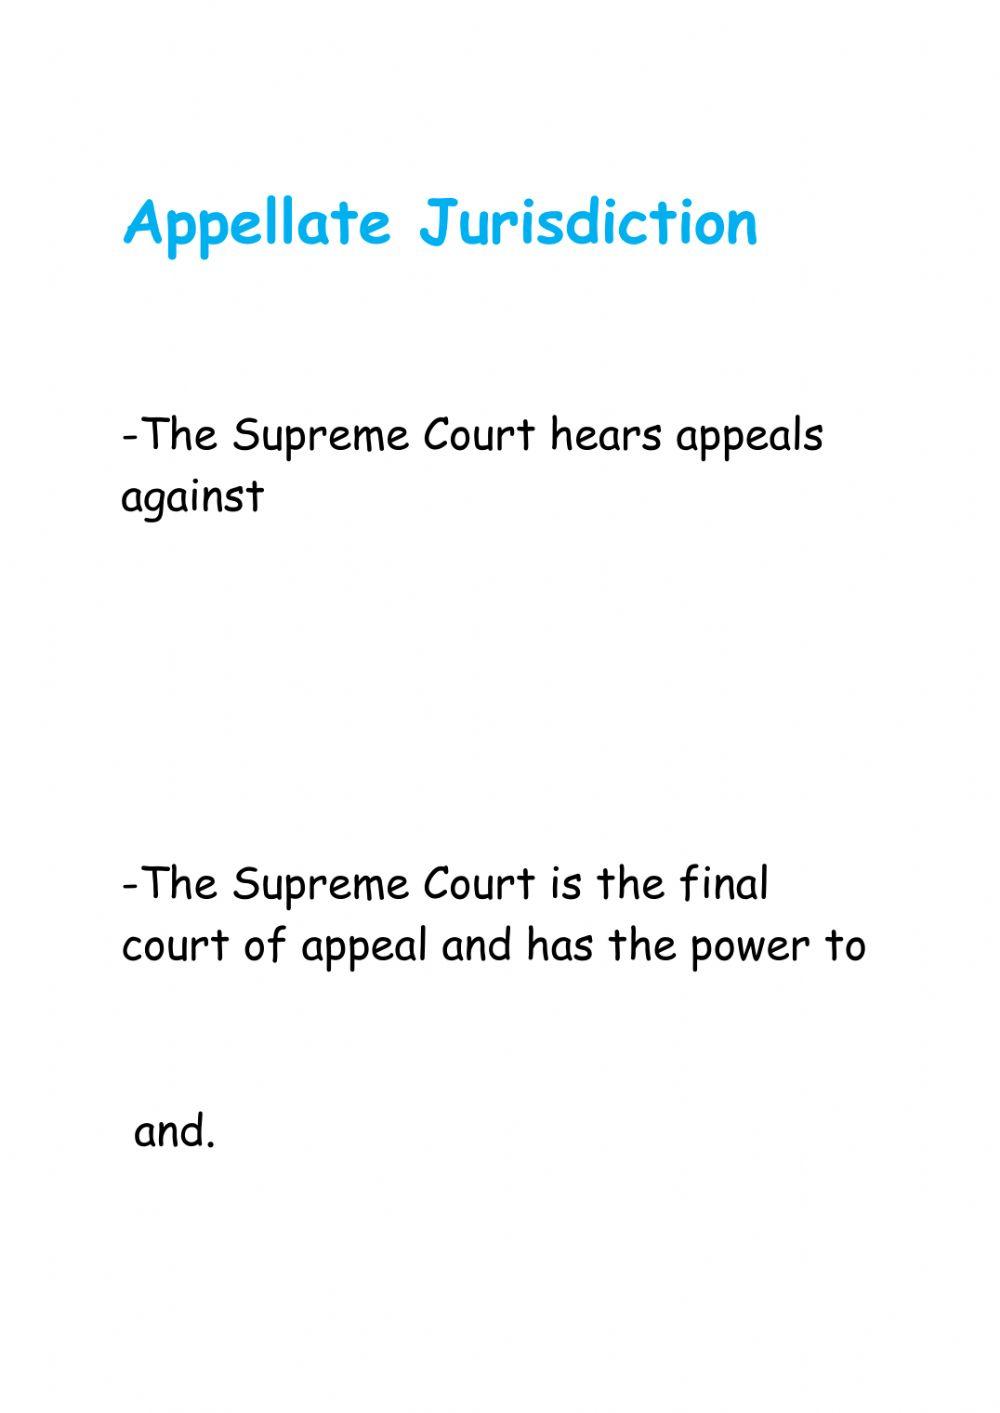 The judiciary